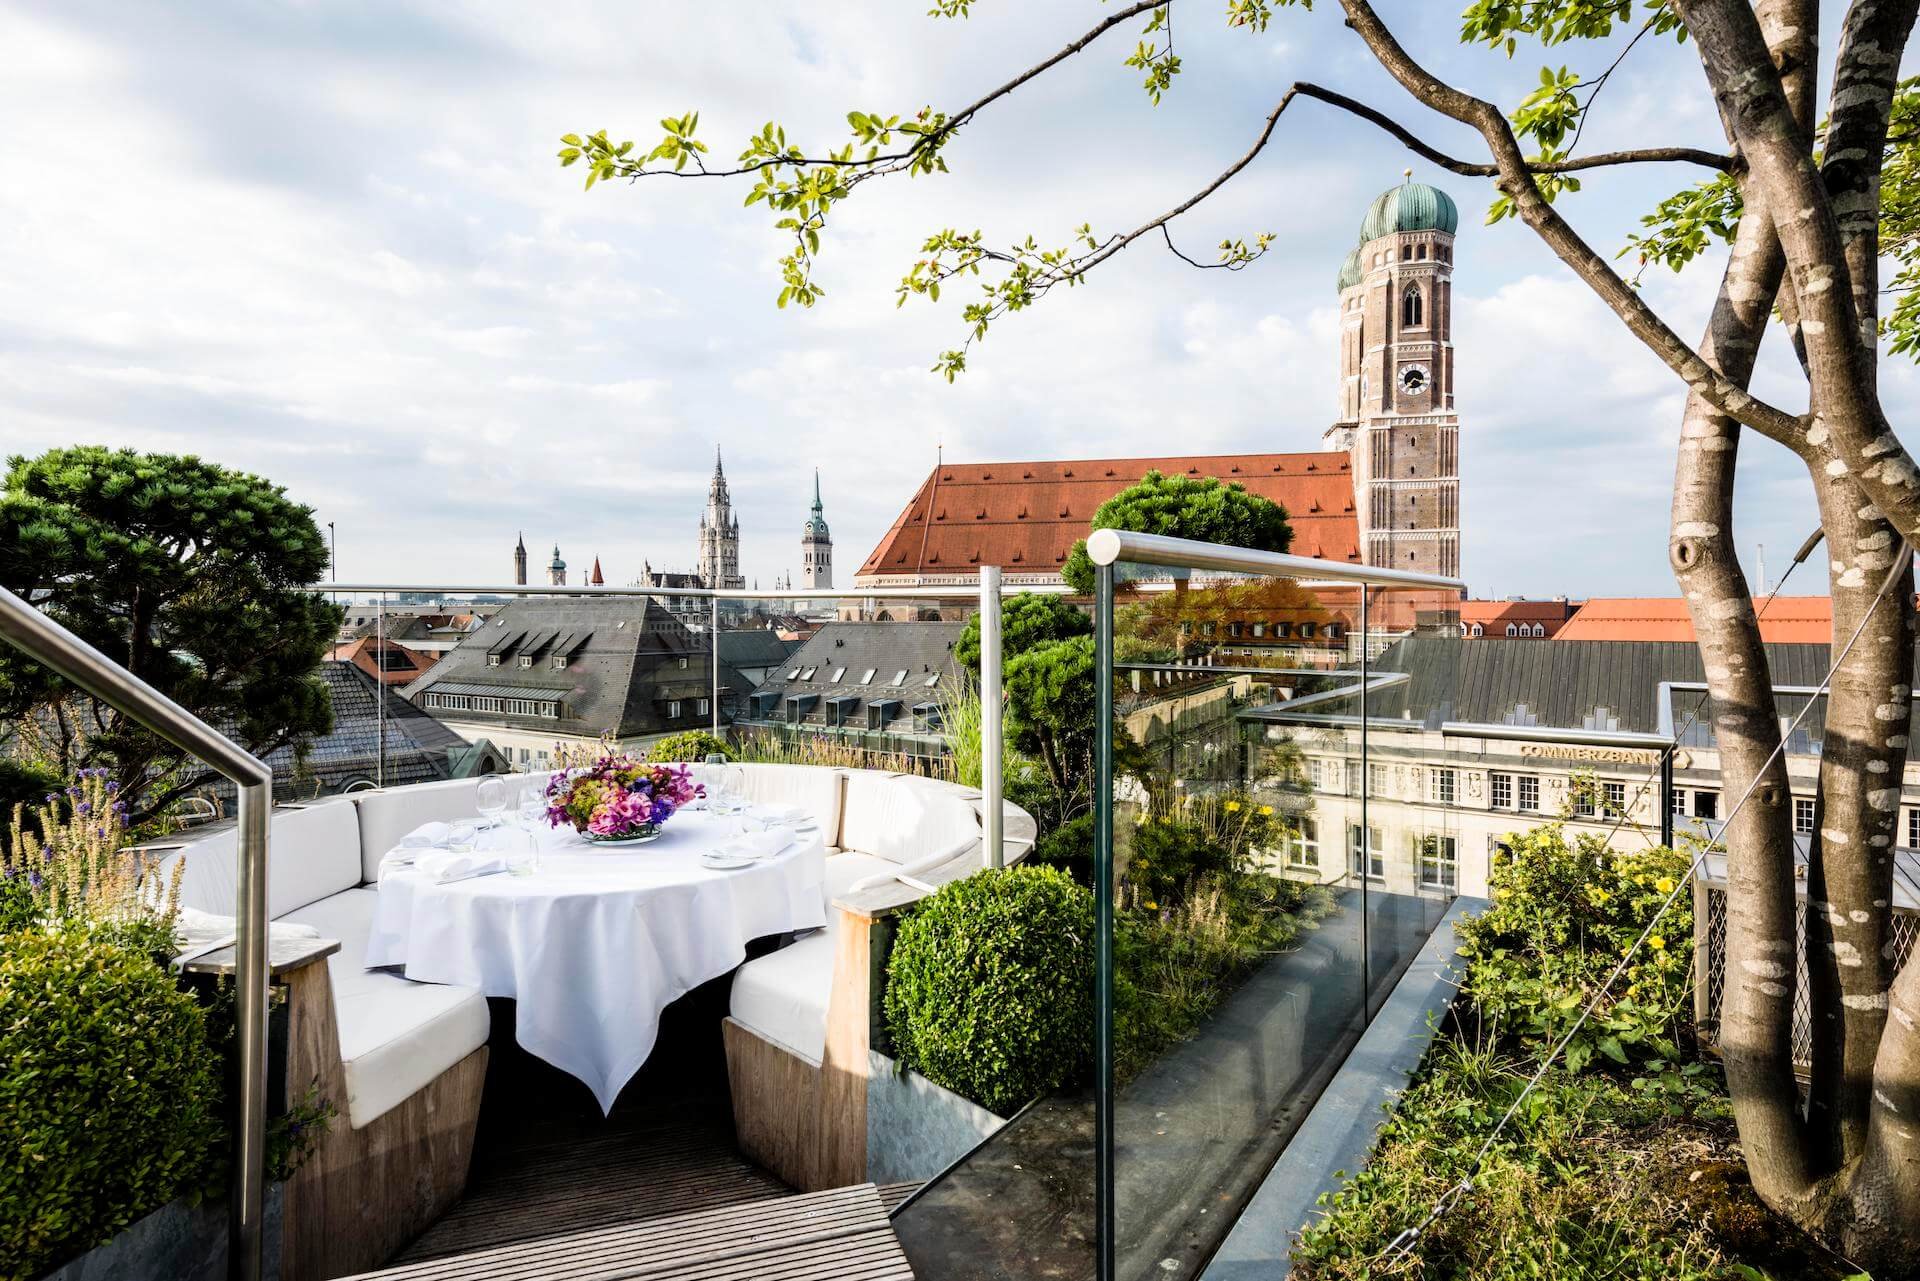 Rooftop dinner table Bayerischer hof terrace Munchen Munich.jpg